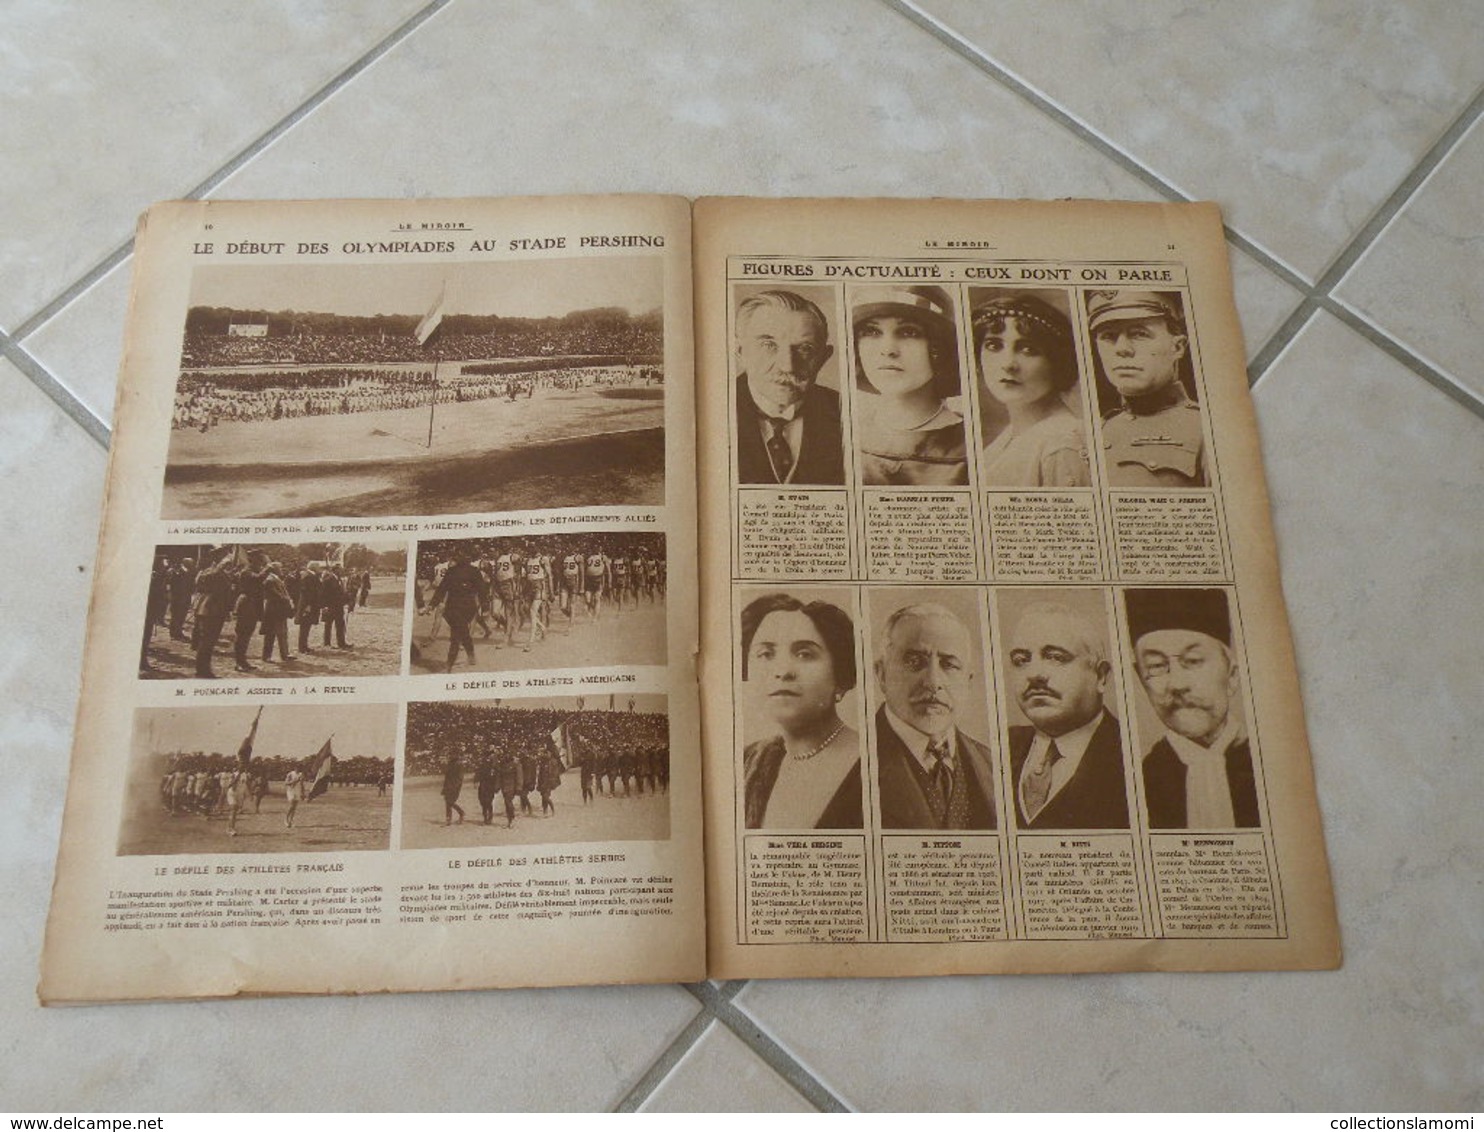 Le Miroir-la Guerre 1914-1918 -Journal n°293 - 6.7.1919 (Titres sur photos) Les infos sur la vie des soldats et civiles